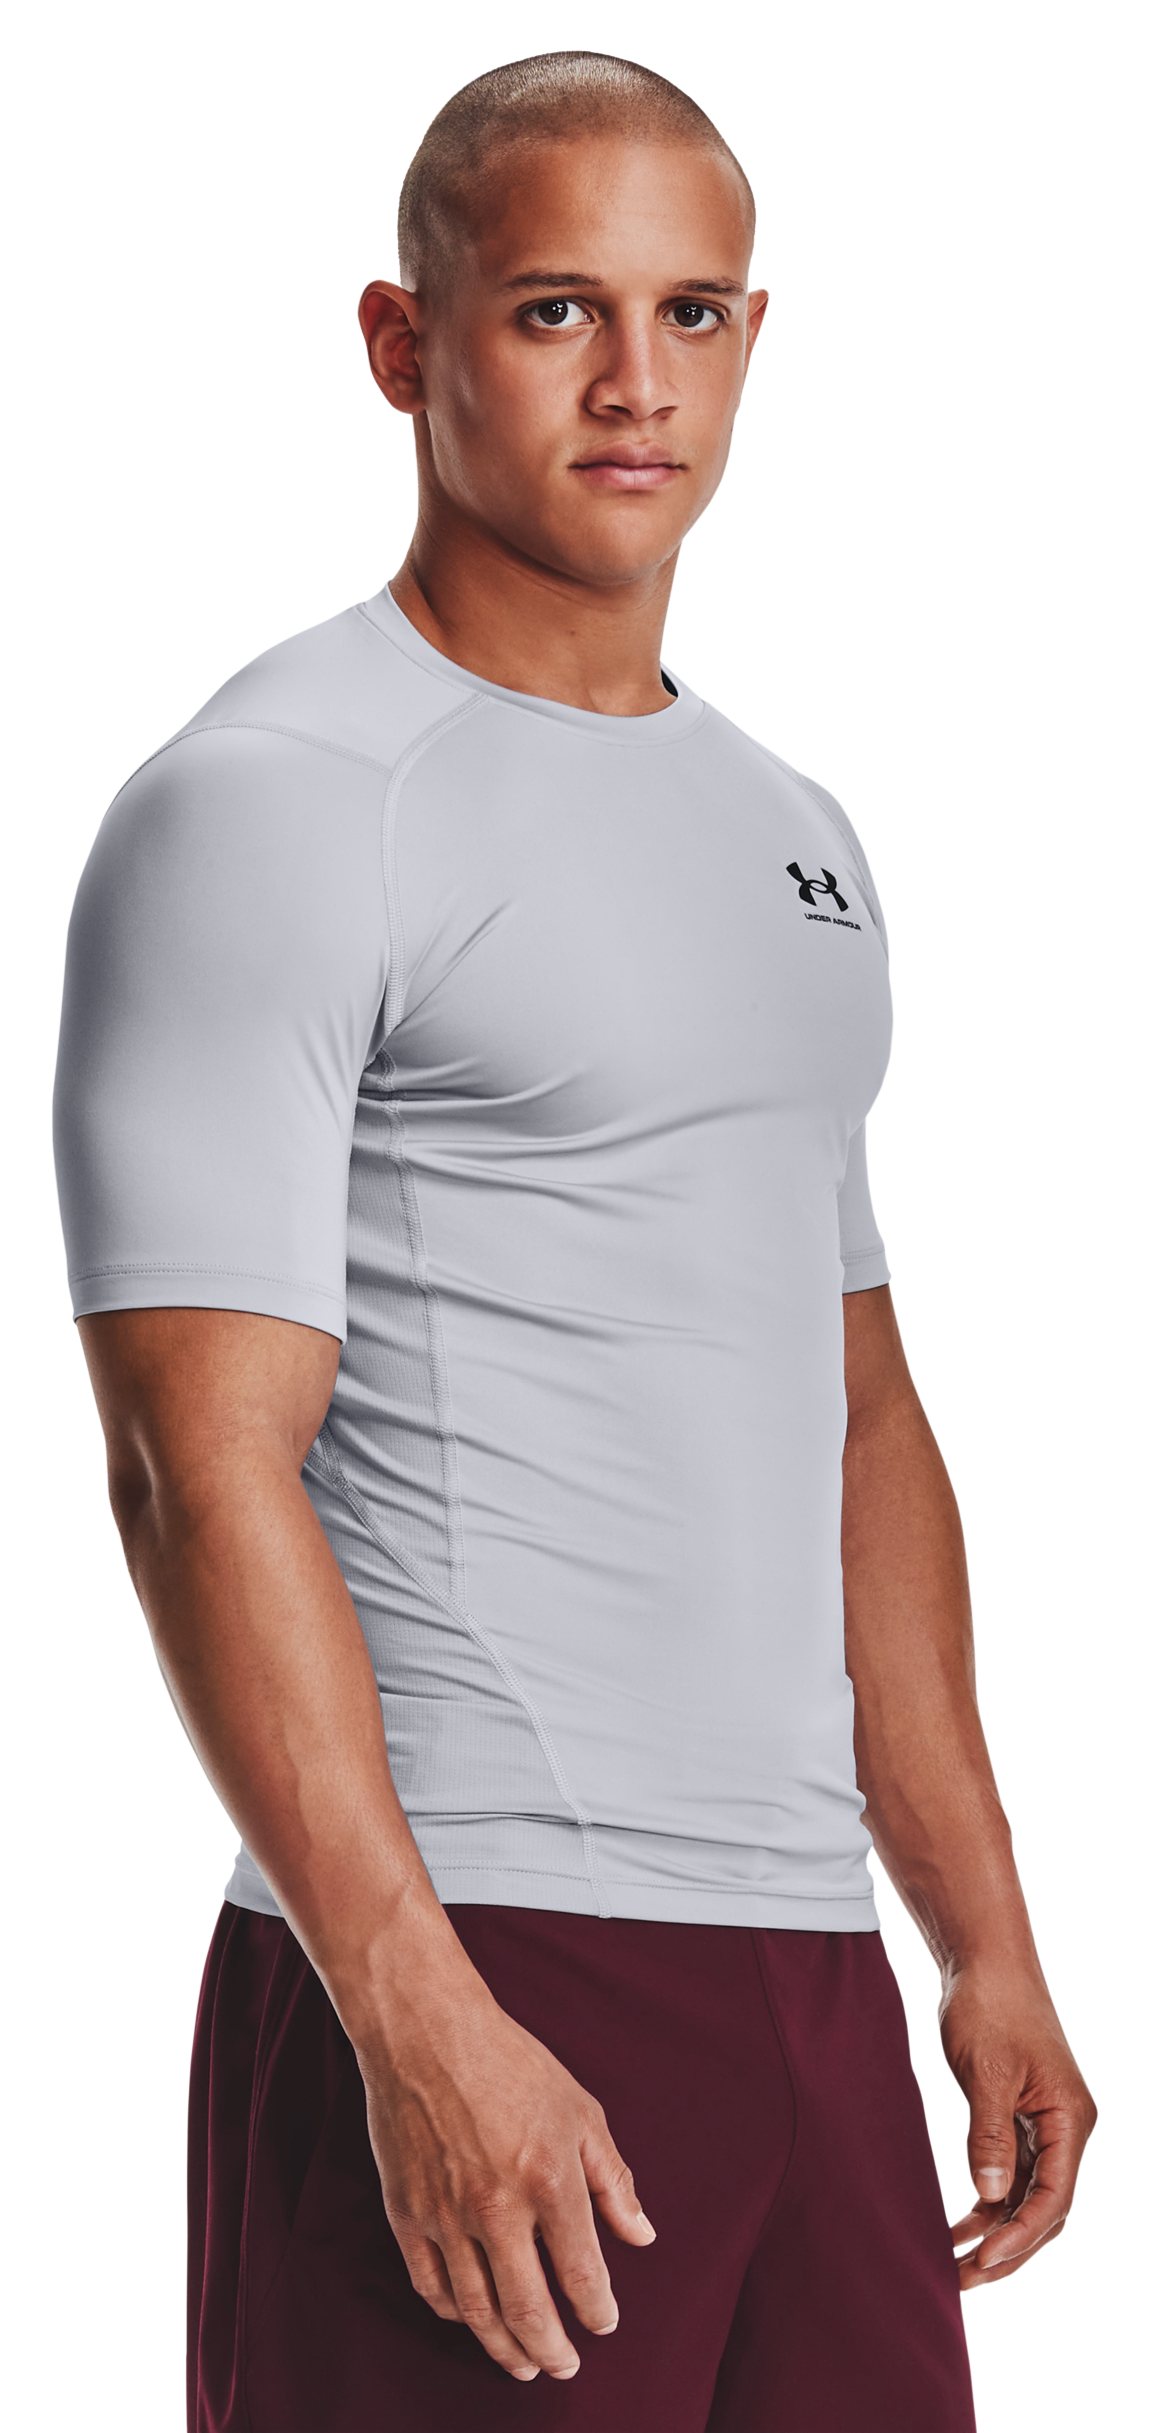 Under Armour HeatGear Short-Sleeve T-Shirt for Men - Mod Gray/Black - M